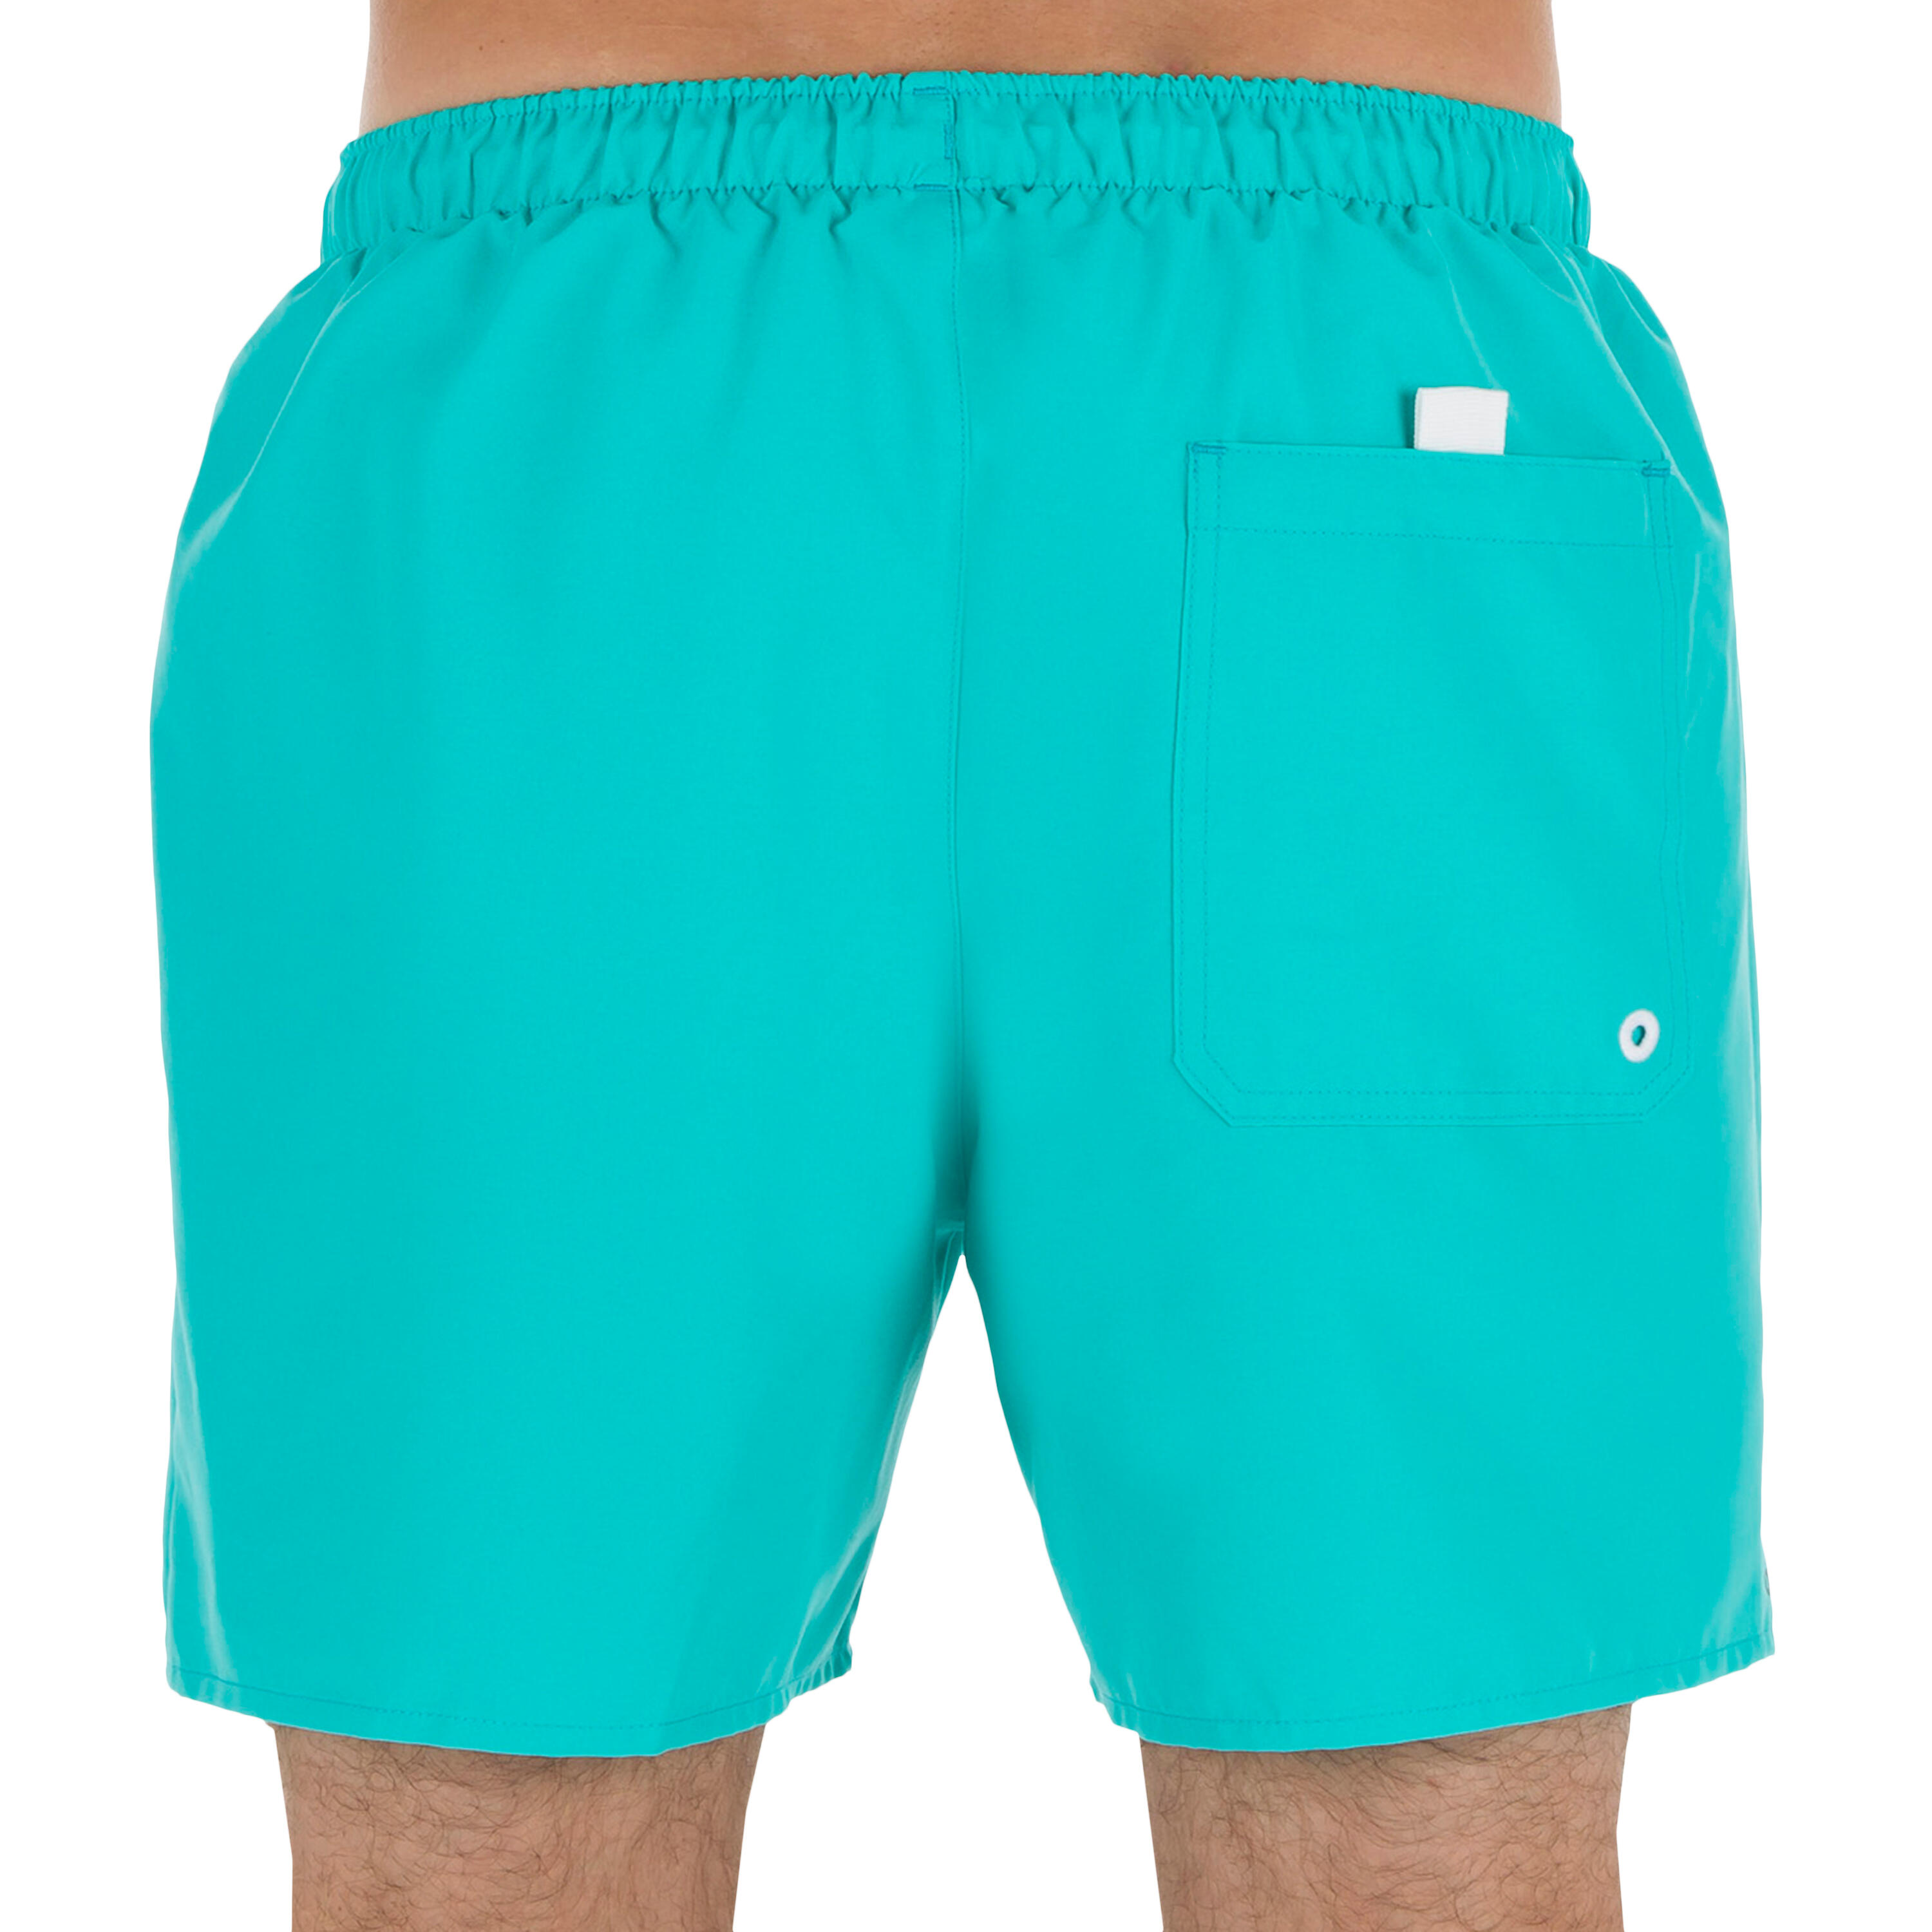 Hendaia Short Boardshorts - NT Turquoise 3/5